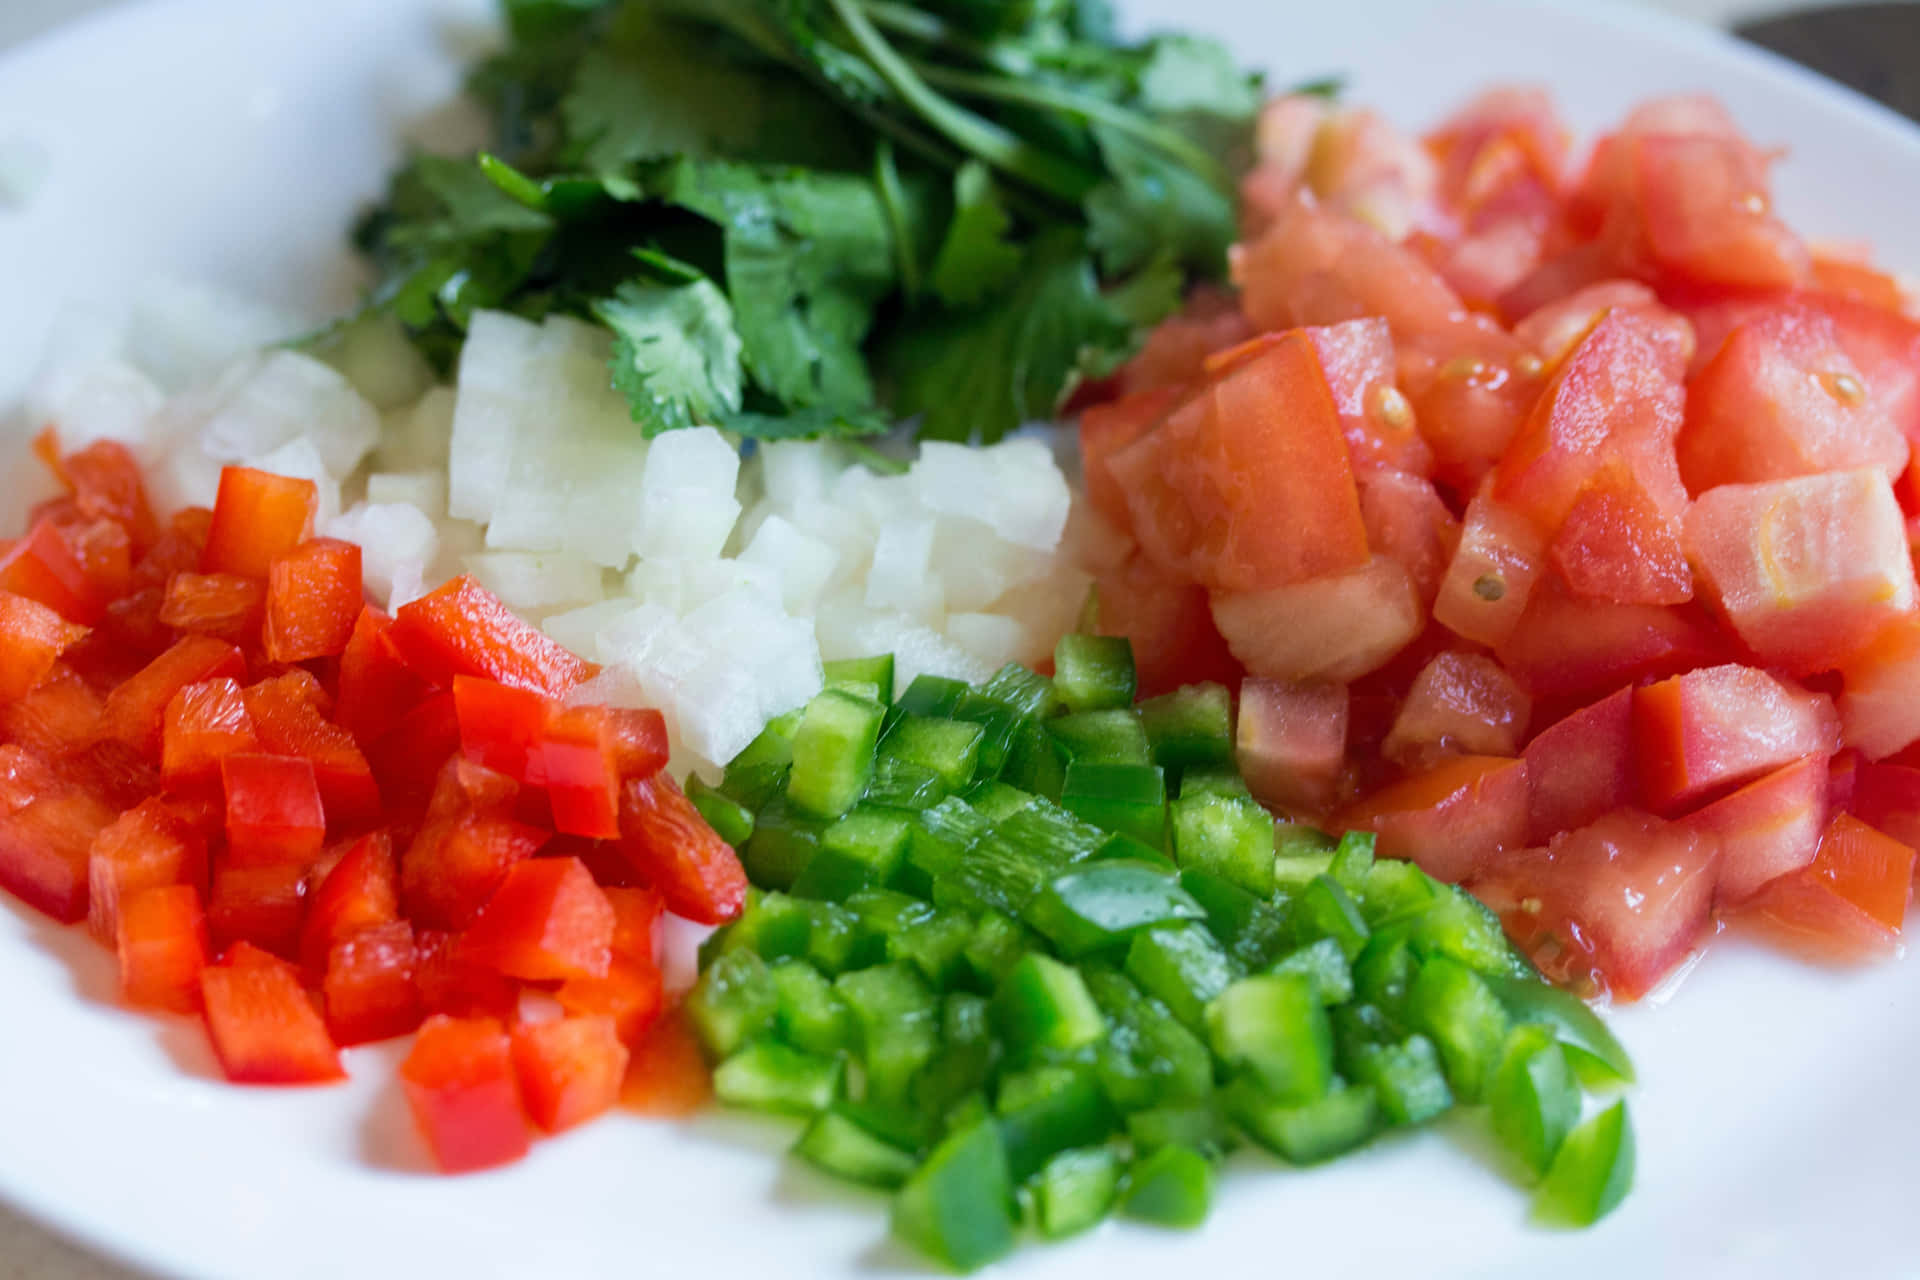 Umaseleção De Vegetais Saudáveis E Folhas Verdes Tornam Esta Salada A Opção Perfeita De Refeição.